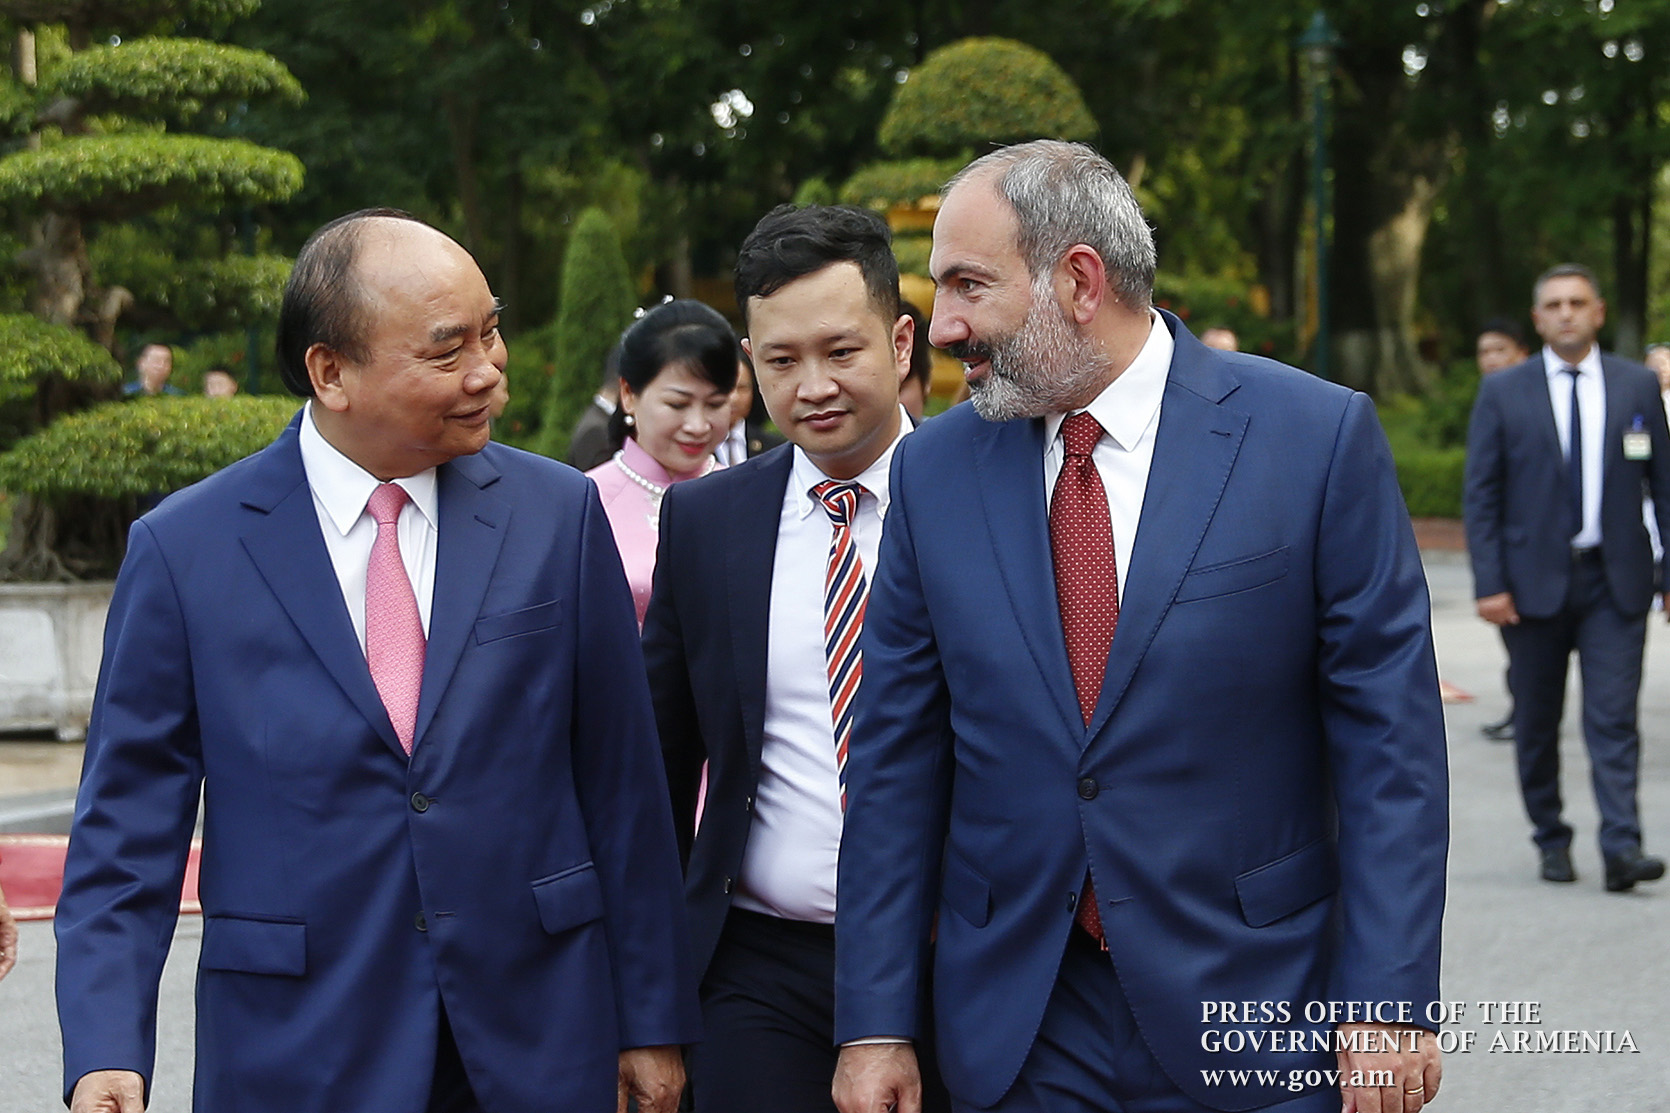 Армения готова наращивать сотрудничество в формате ЕАЭС-Вьетнам - Пашинян